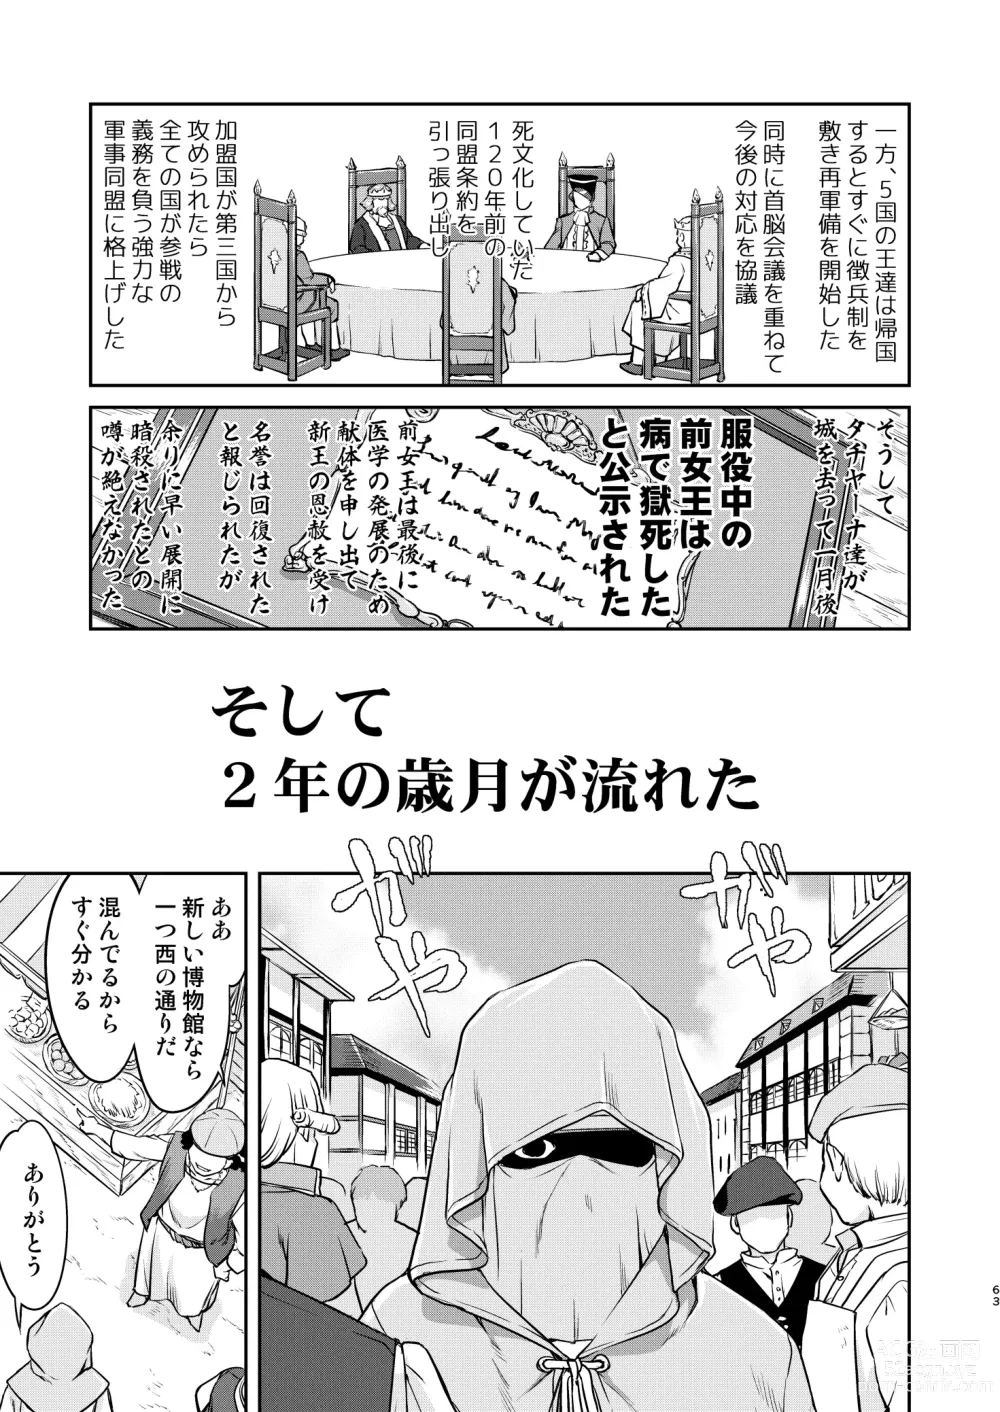 Page 63 of doujinshi Joou Heika no Koufuku Rougoku Hen